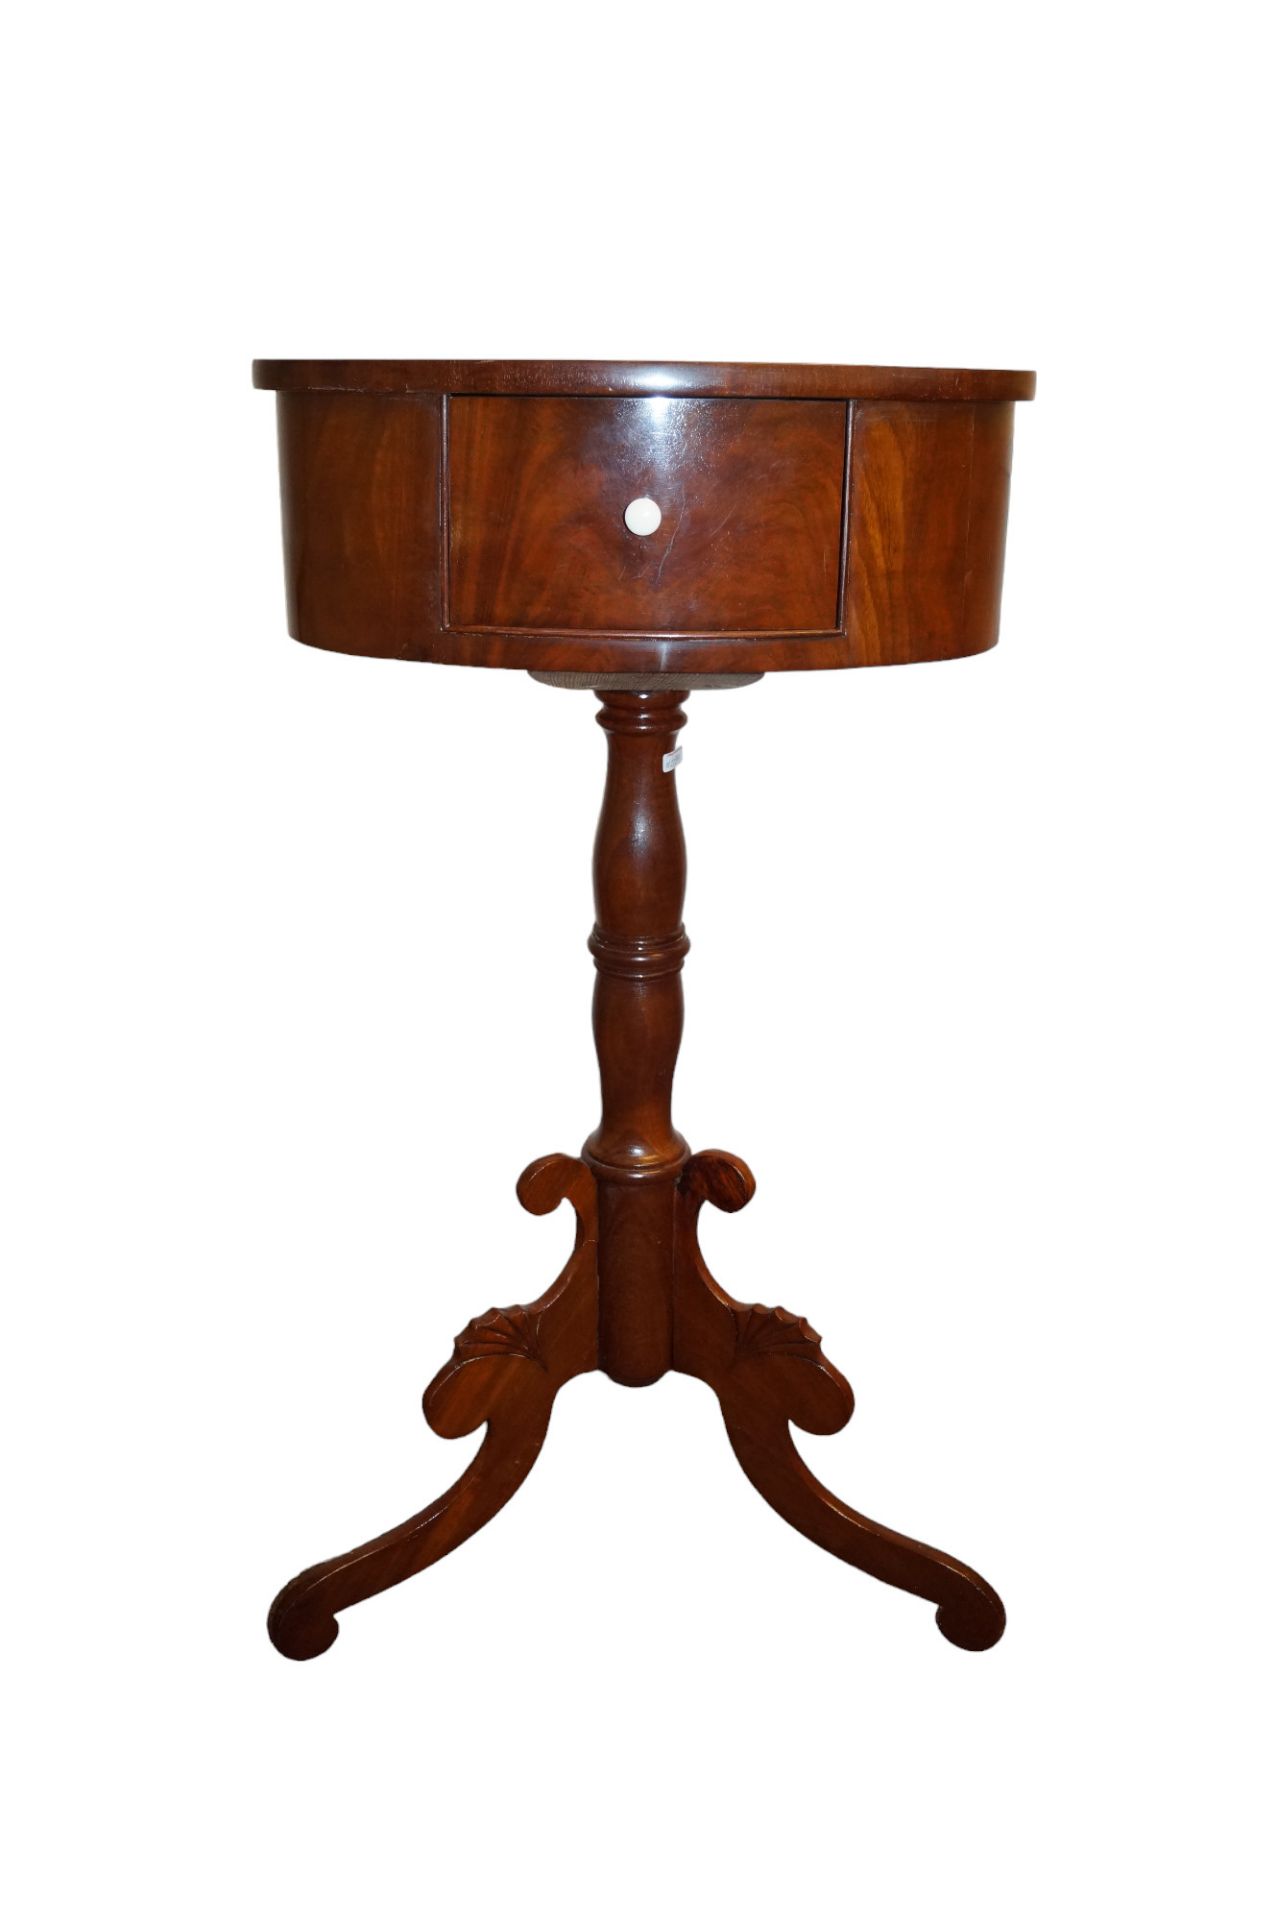 Ovales Tischchen in Tonnenform mit kleinem Schub auf der Stirnseite; dreipassiger Stand; auf der De